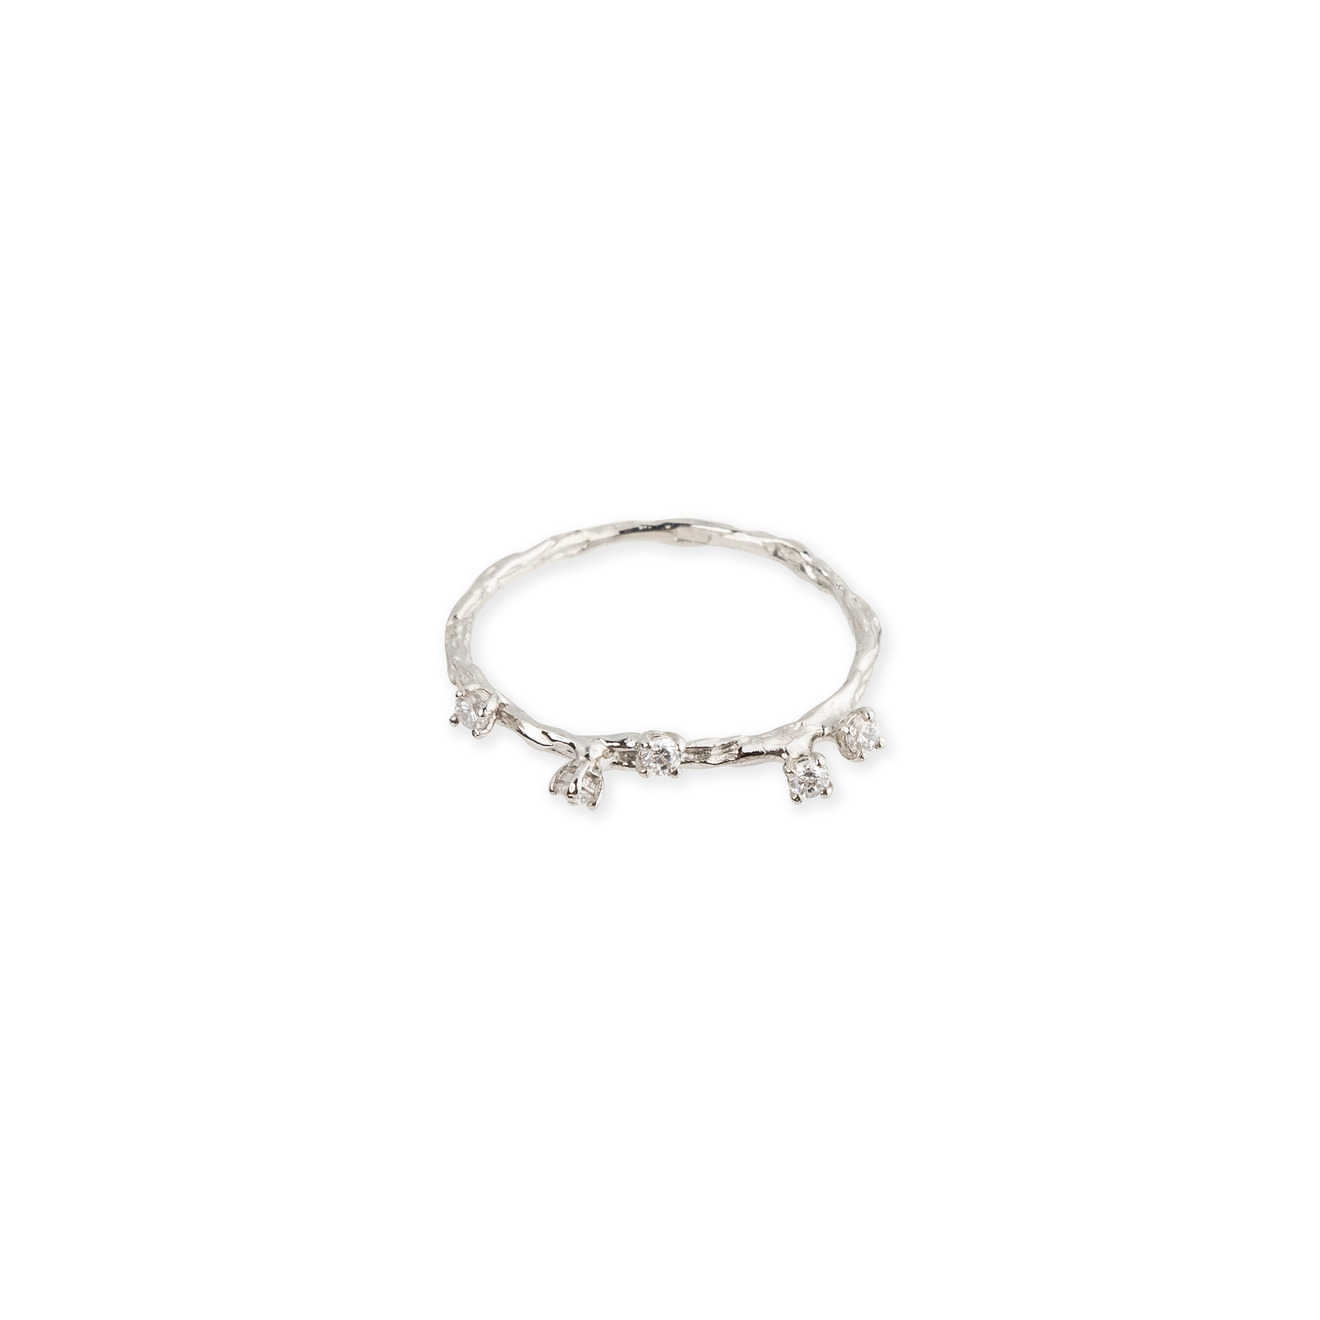 nastya maximova тонкое позолоченное кольцо из серебра с фианитами Nastya Maximova Тонкое кольцо из серебра с 5 кристаллами